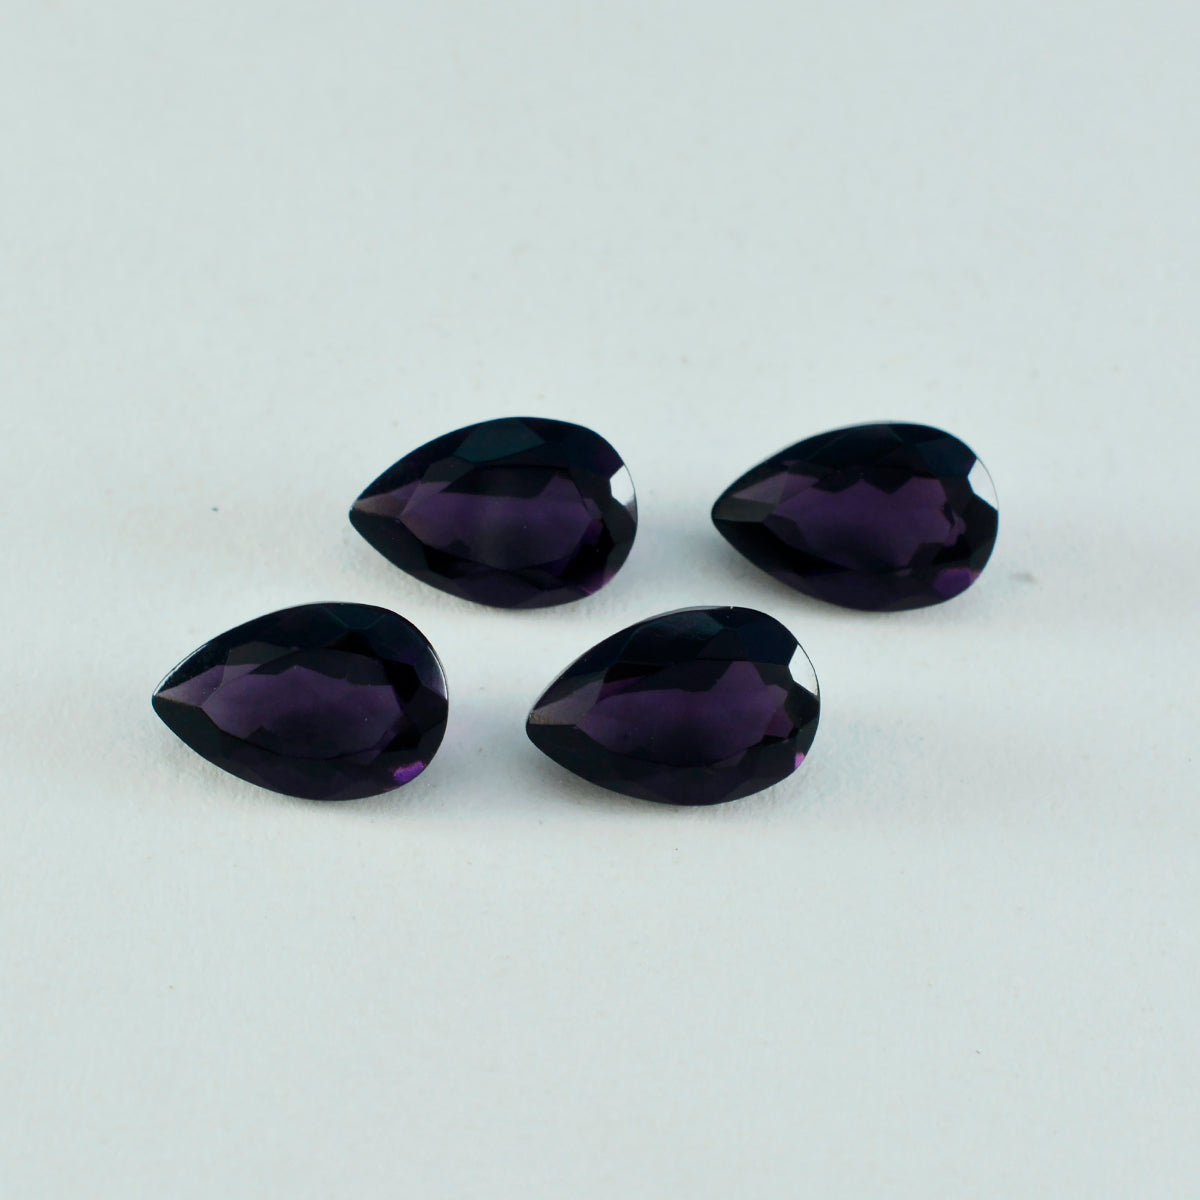 Riyogems 1PC Purple Amethyst CZ Faceted 8x12 mm Pear Shape A+ Quality Loose Gems